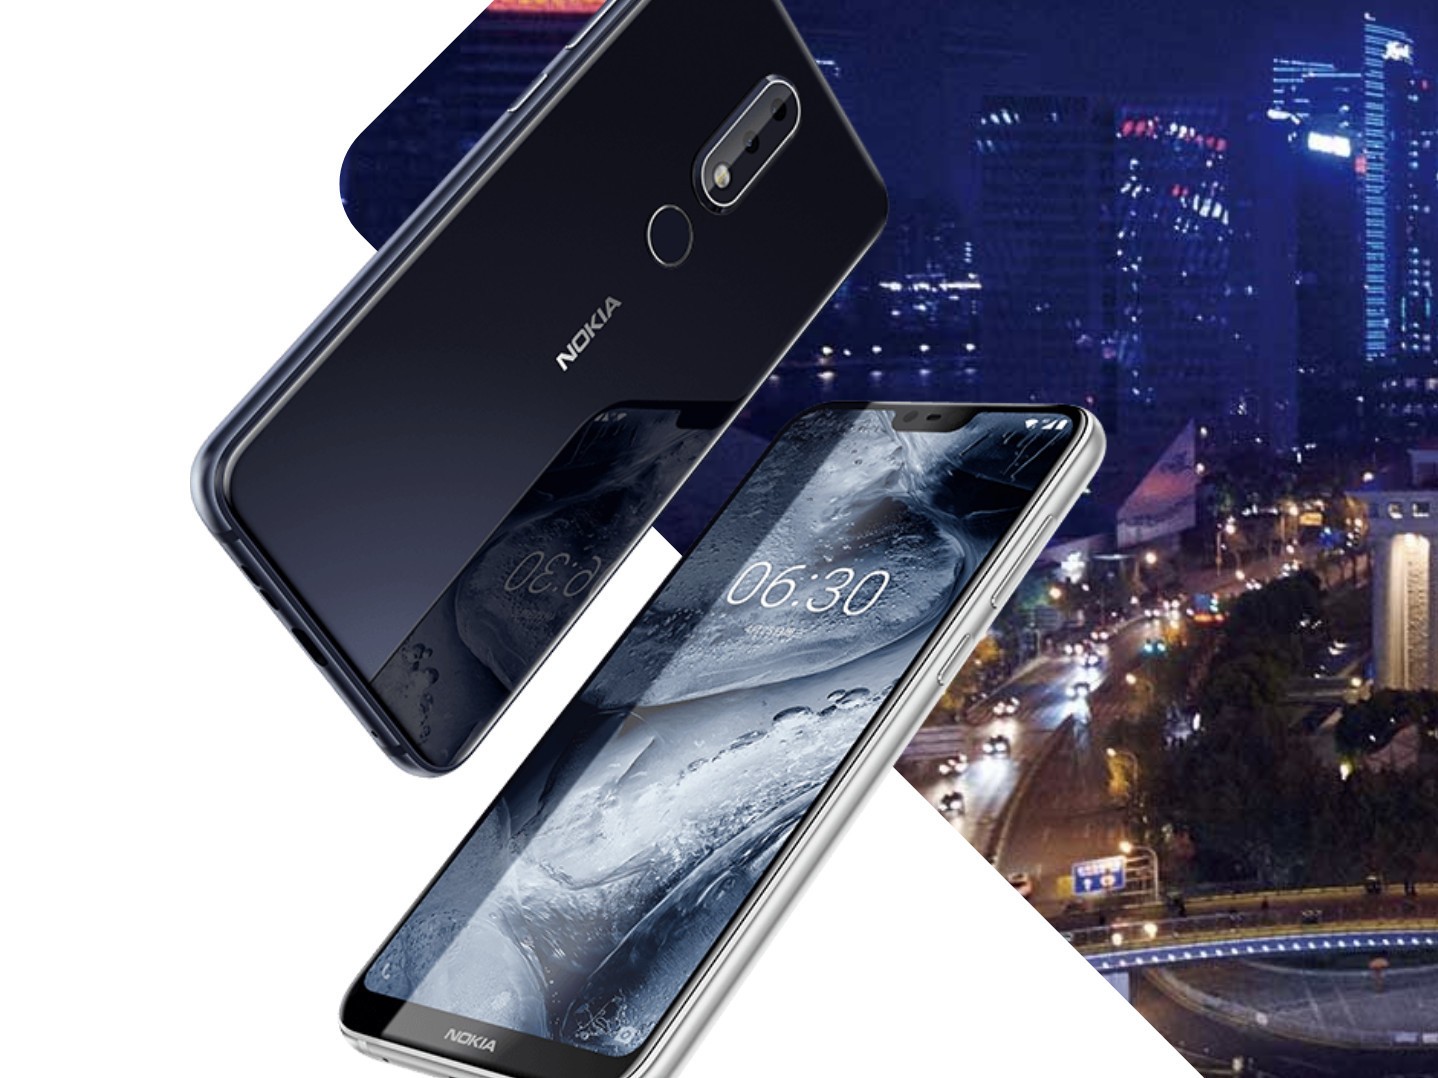 مميزات وعيوب أحدث هواتف Nokia التي أعلن عنها مؤخرًا Nokia X6